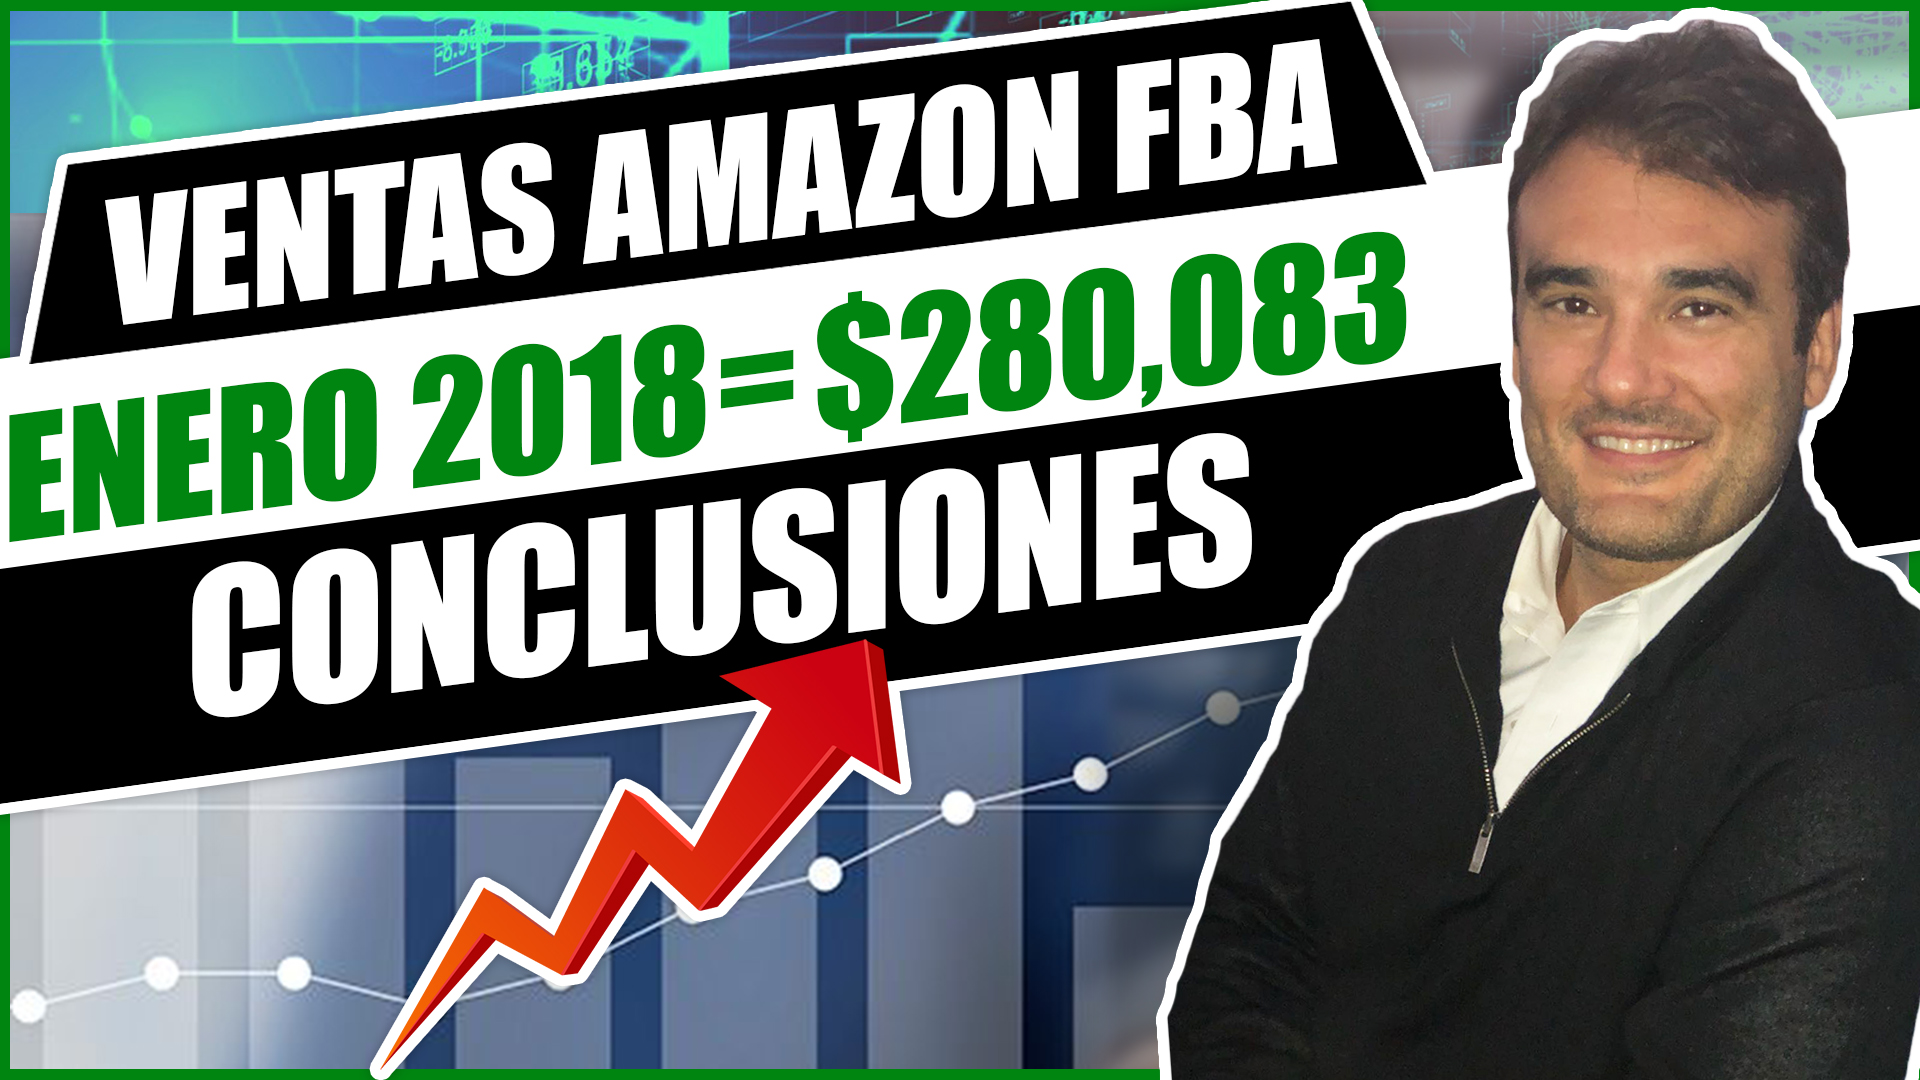 VENTAS AMAZON FBA ENERO 2018 $280,083